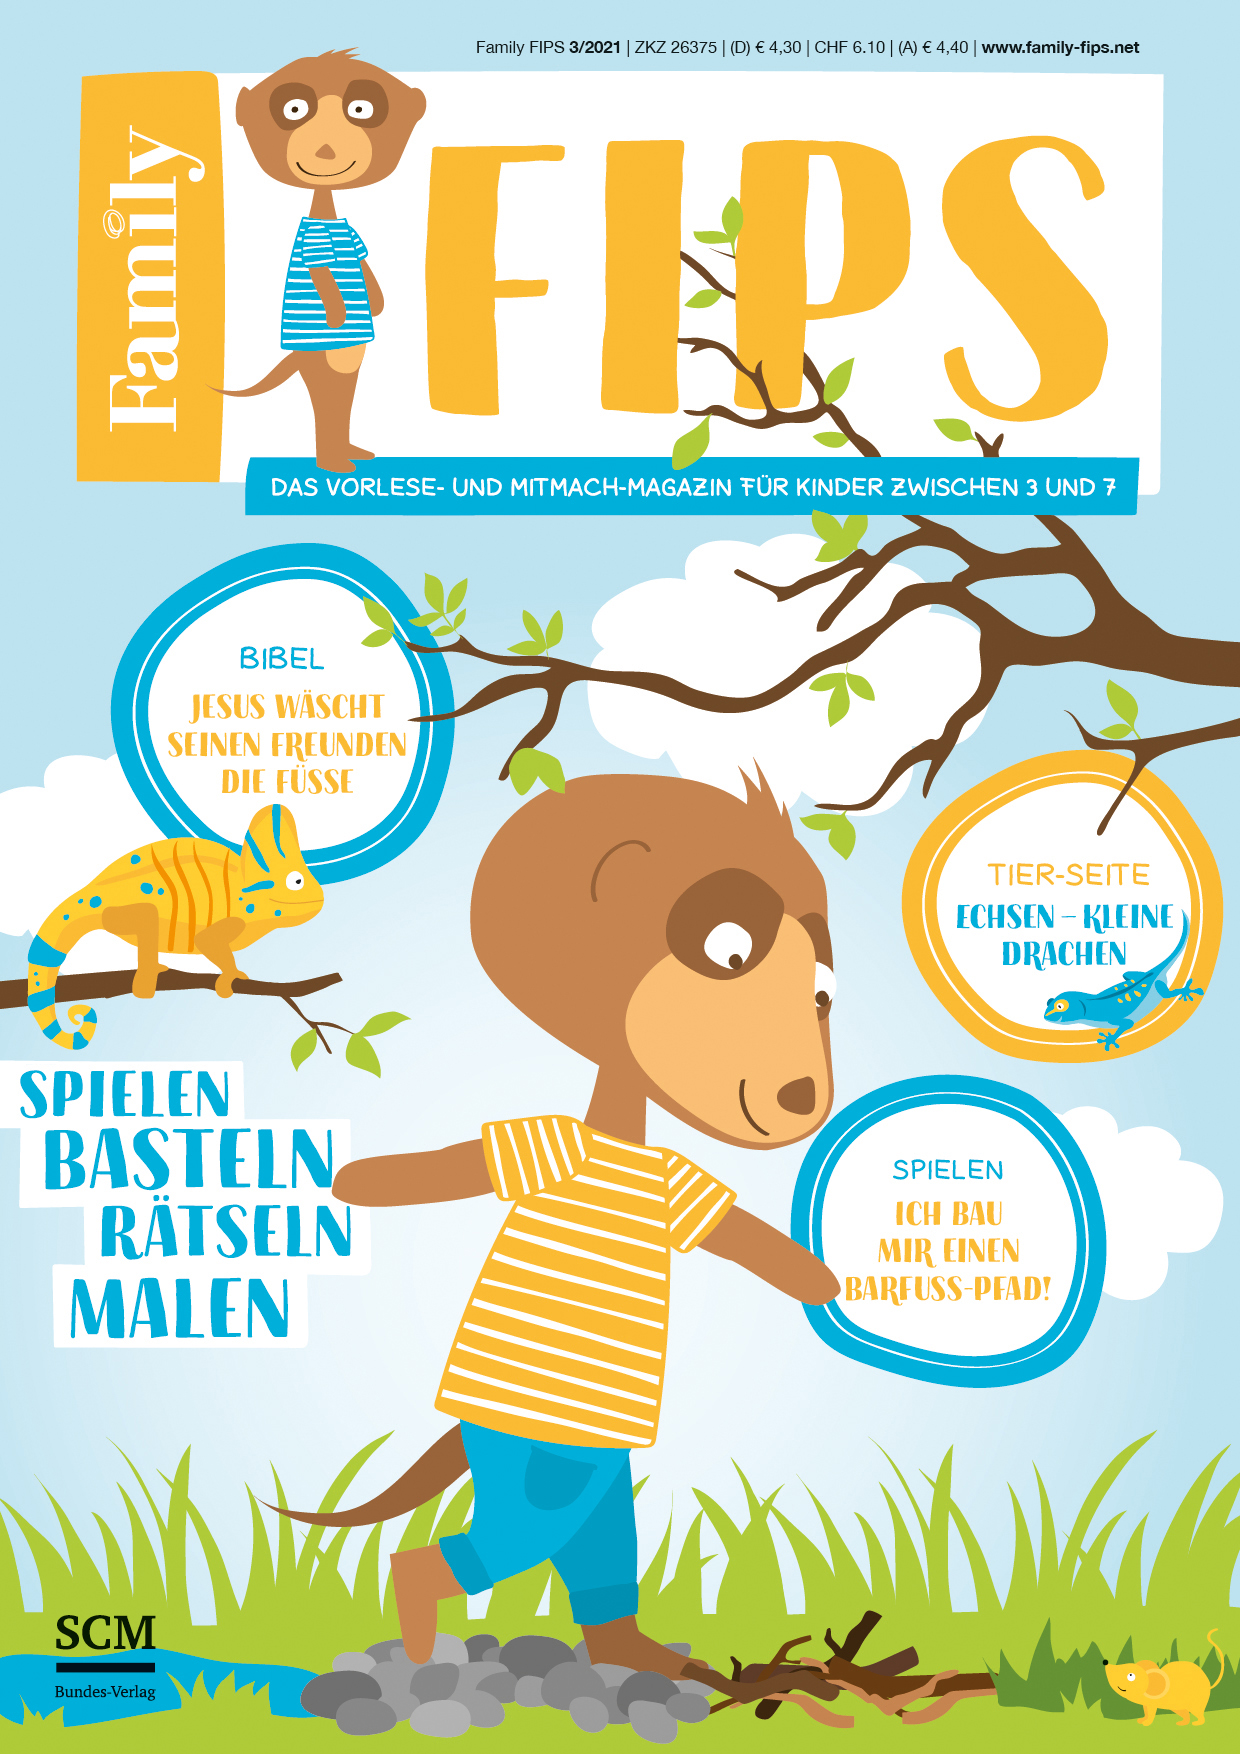 Family FIPS - Abogutschein - Cover